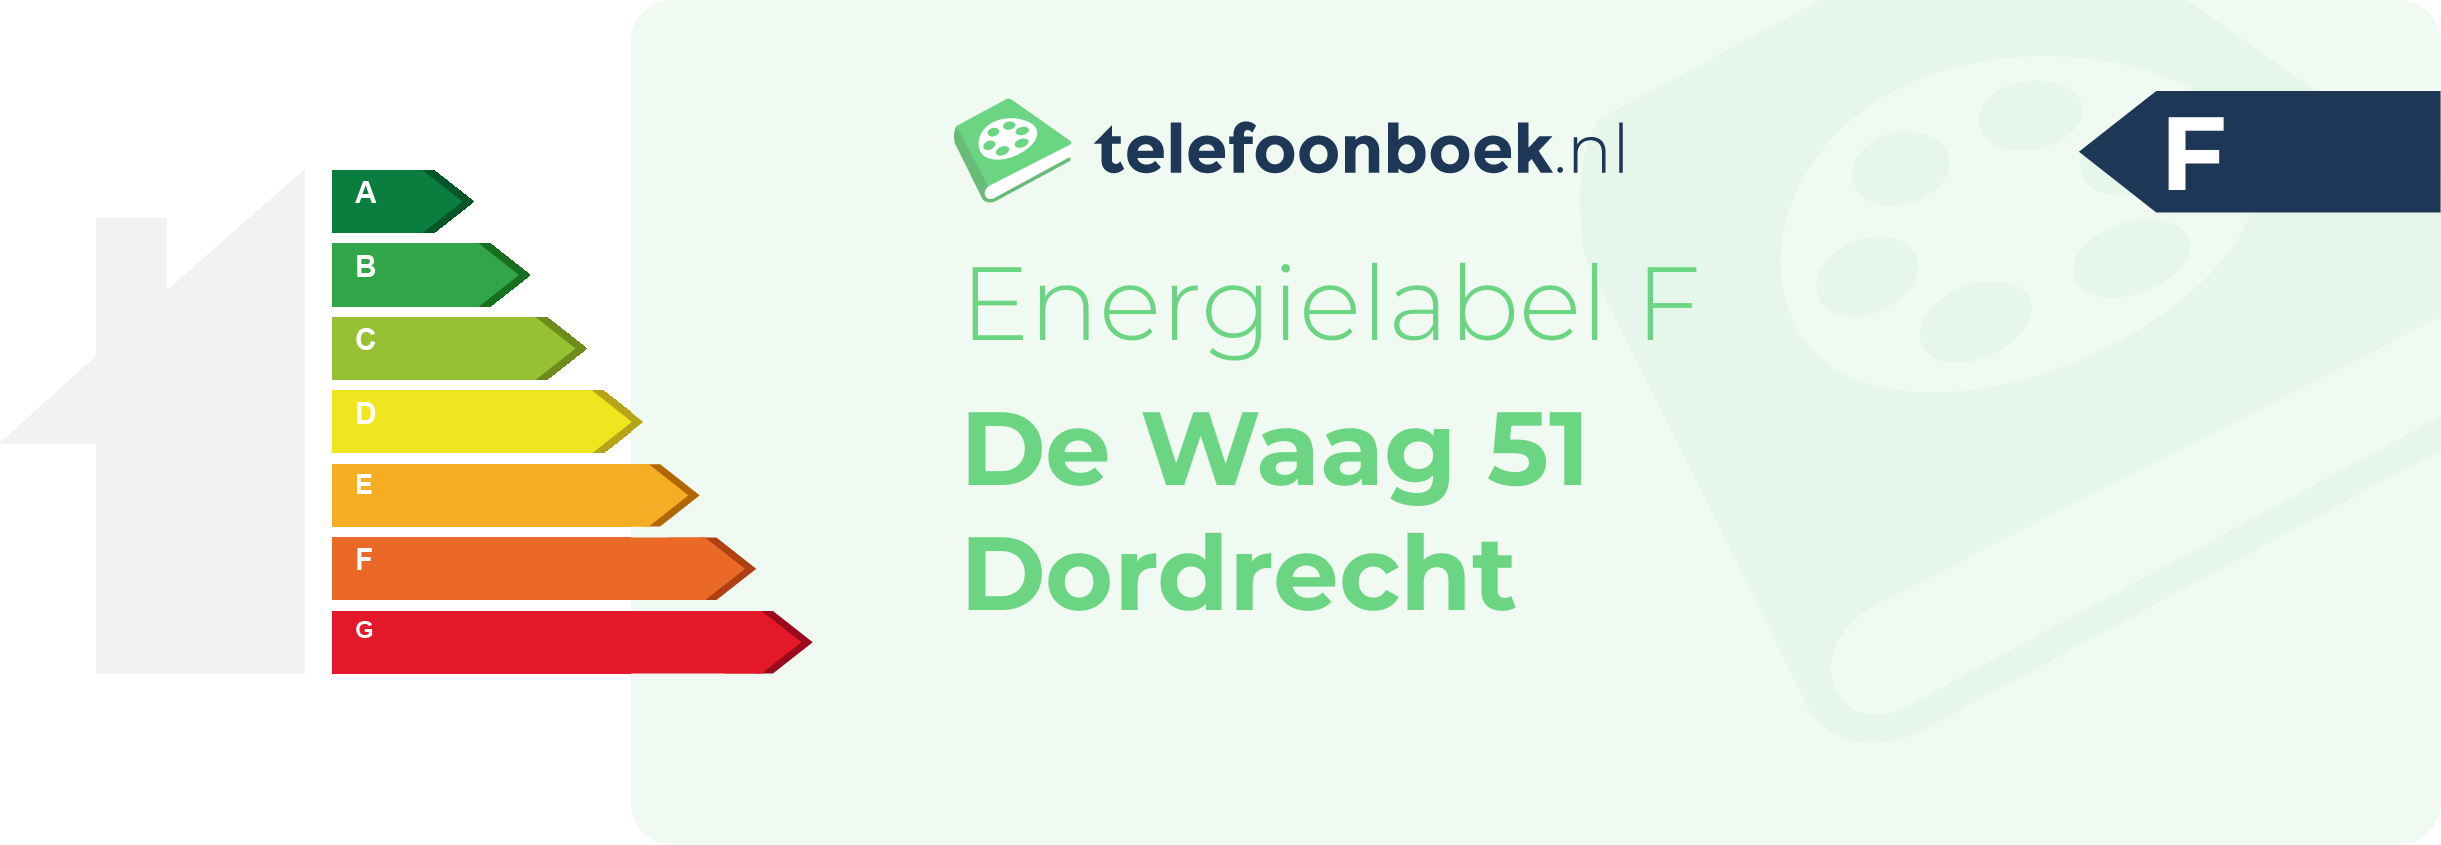 Energielabel De Waag 51 Dordrecht